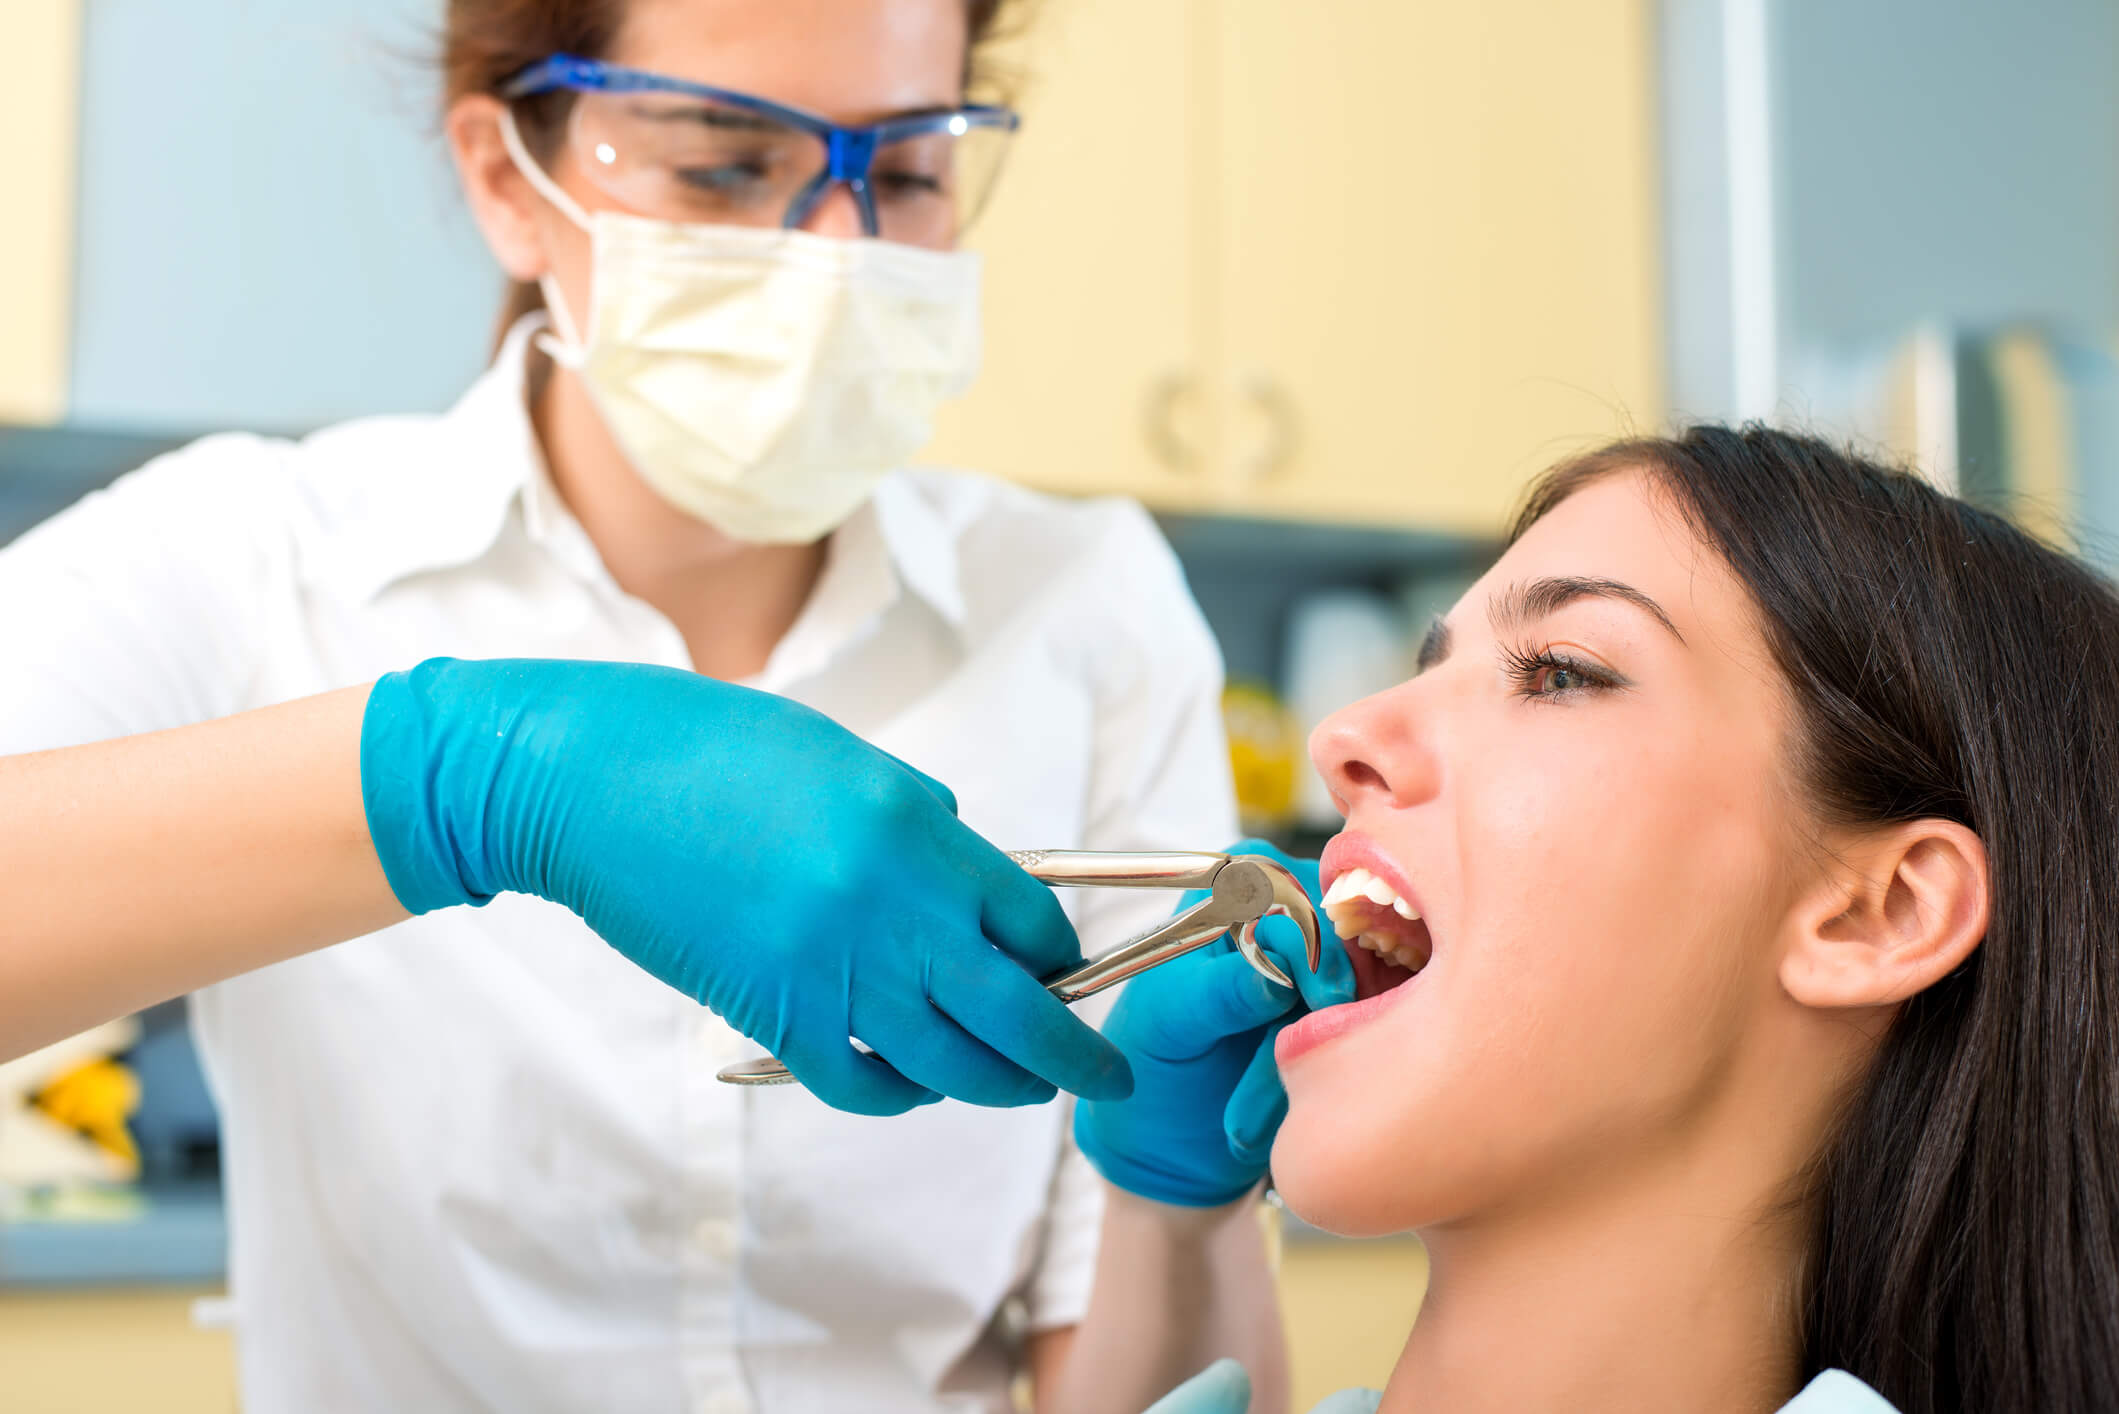 Удаление зуба: все, что нужно знать перед процедурой